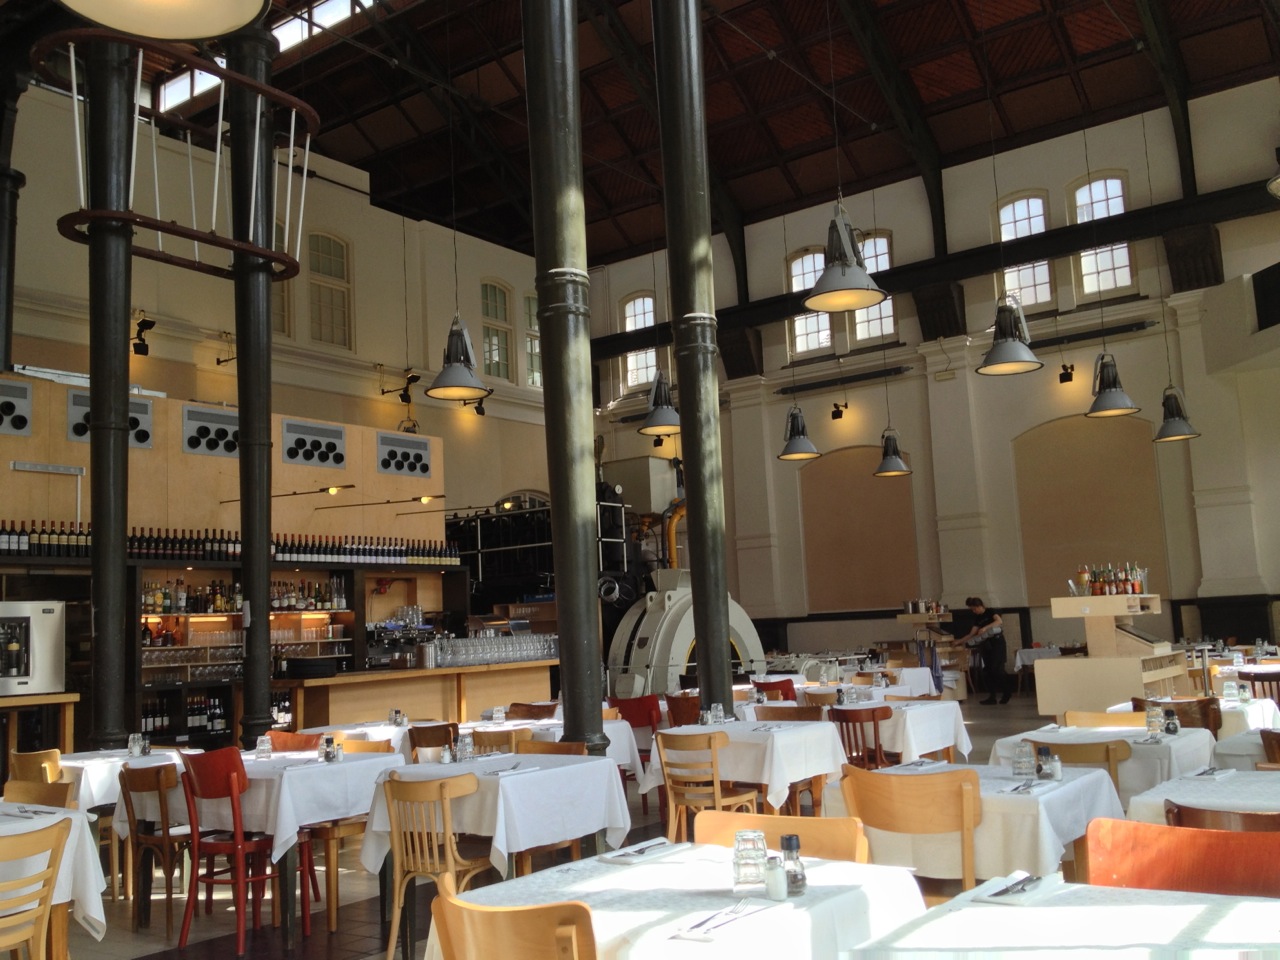 Inside Café-Restaurant Amsterdam